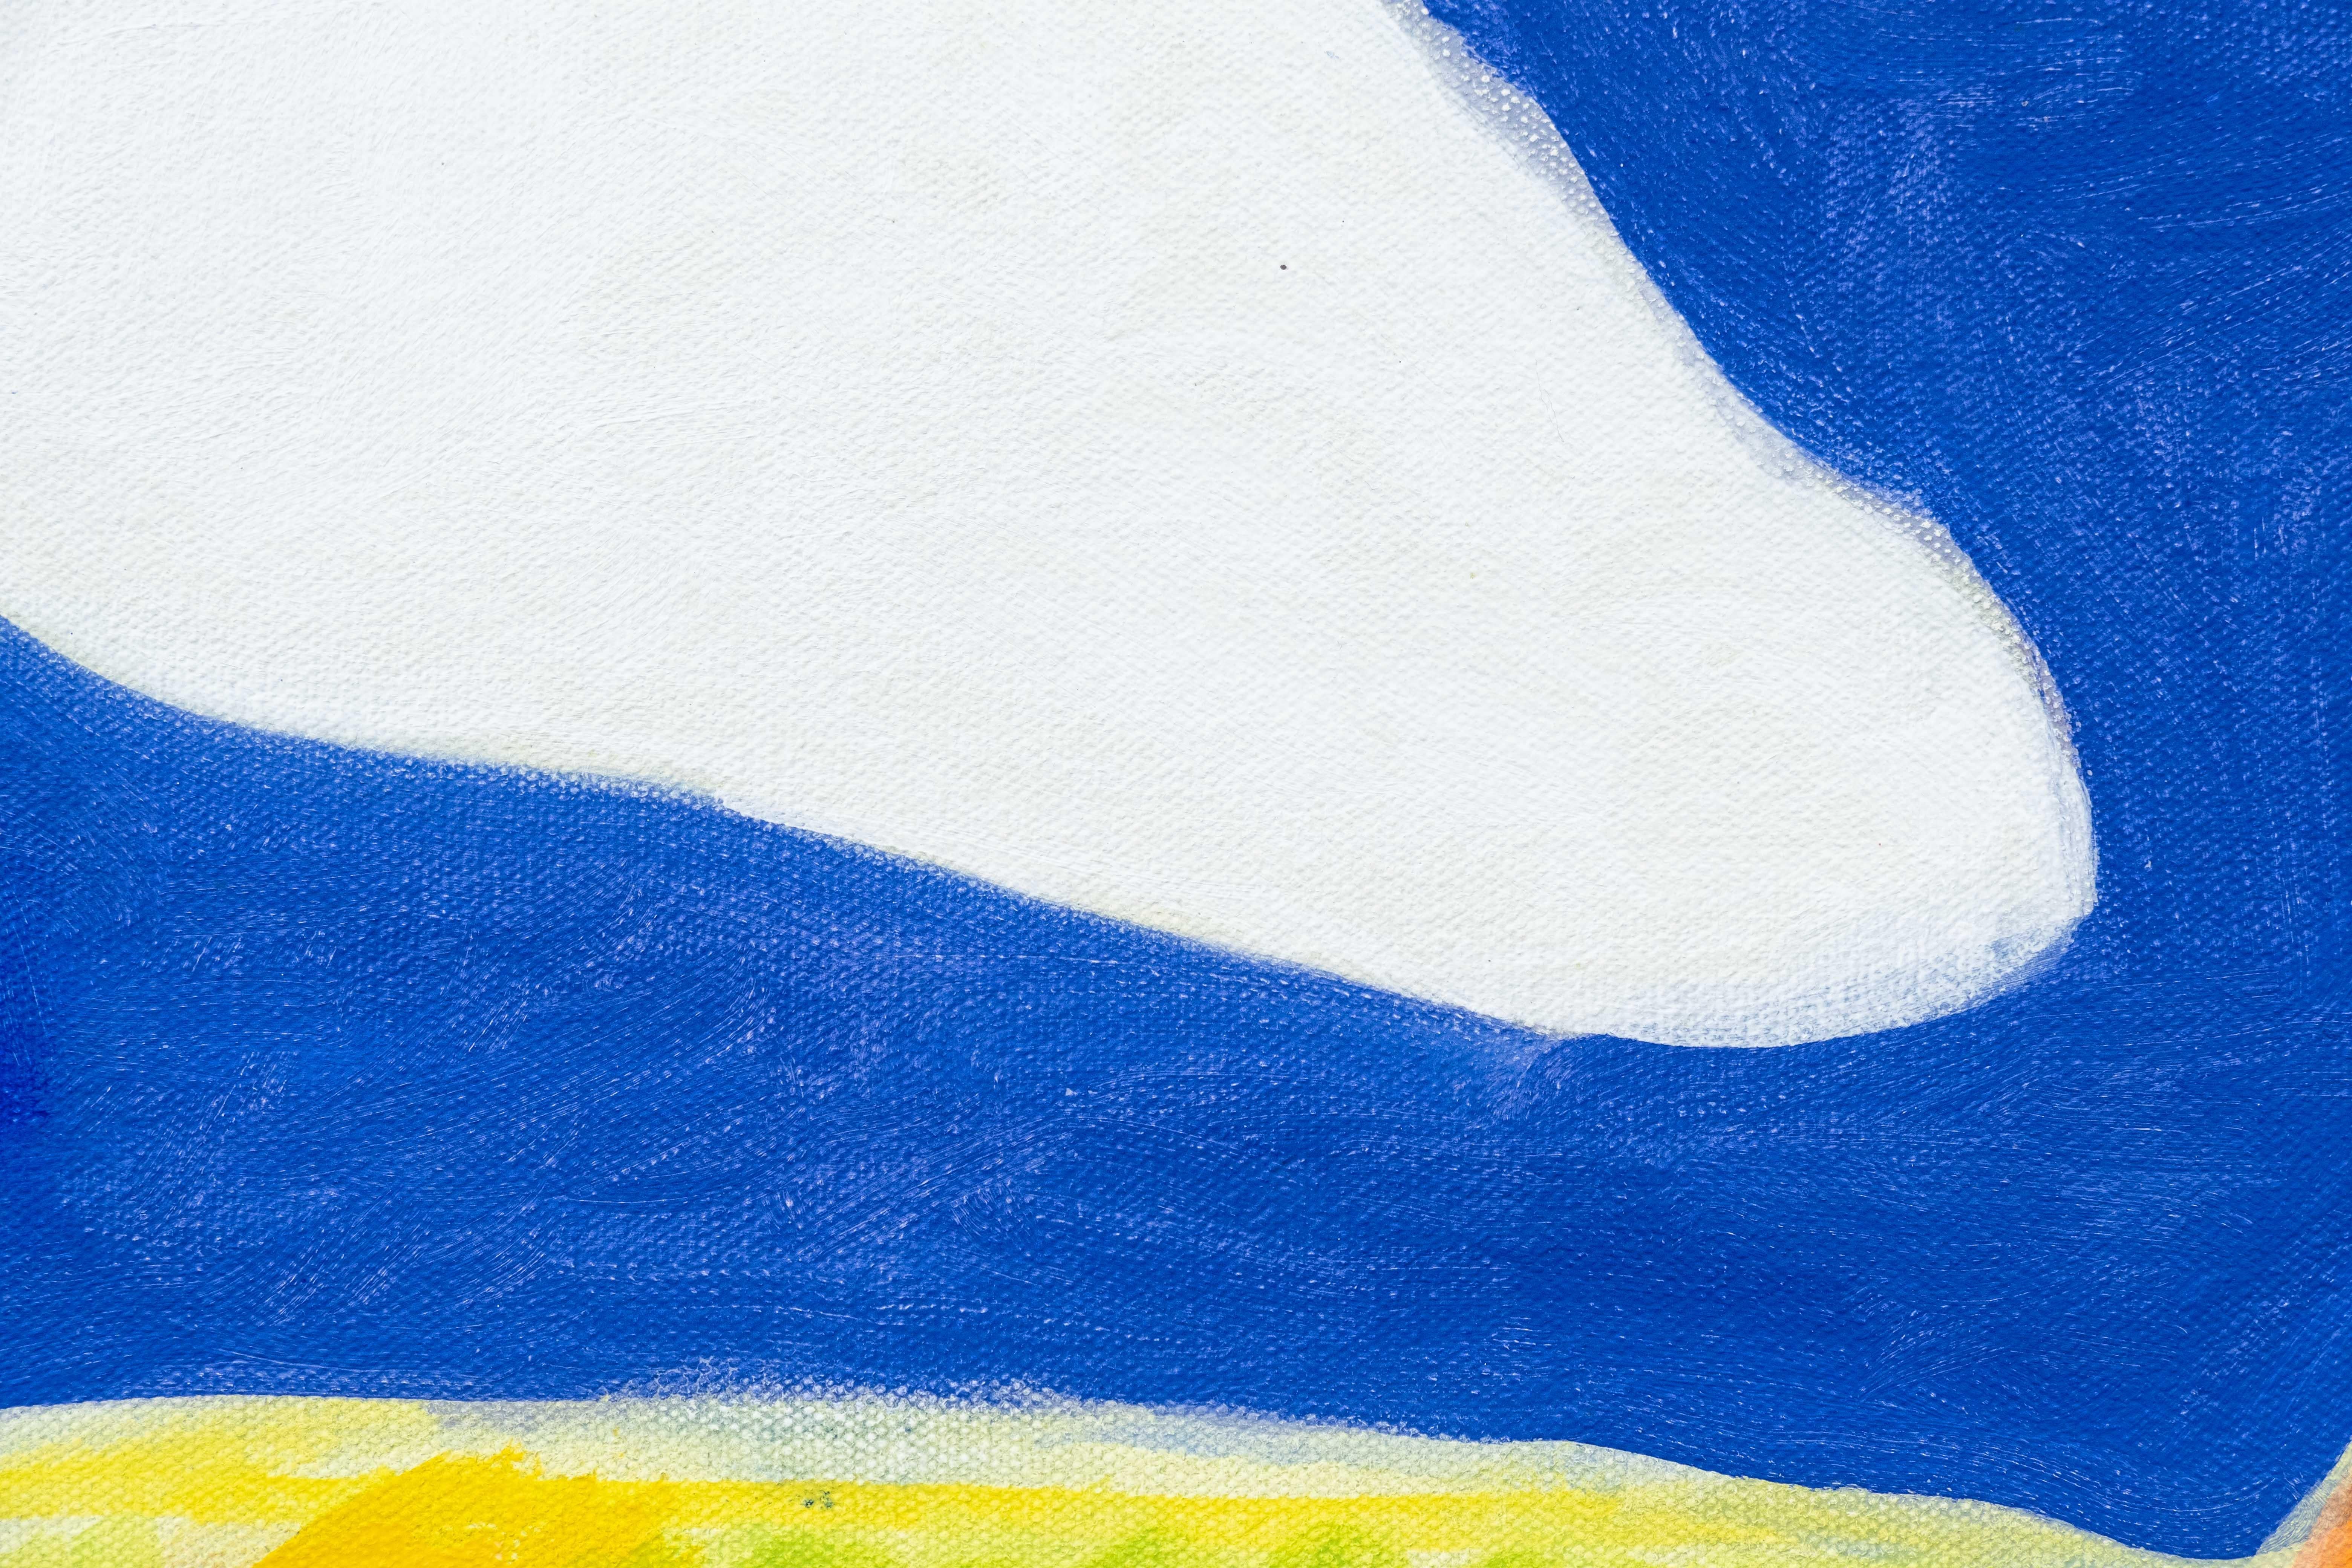 En utilisant des couleurs vives et contemporaines, Pat Service a créé une peinture joyeuse de l'autoroute qui serpente à travers un paysage montagneux. La palette de couleurs vives - jaune vif, orange, bleu profond et vert lime - accentue la forme